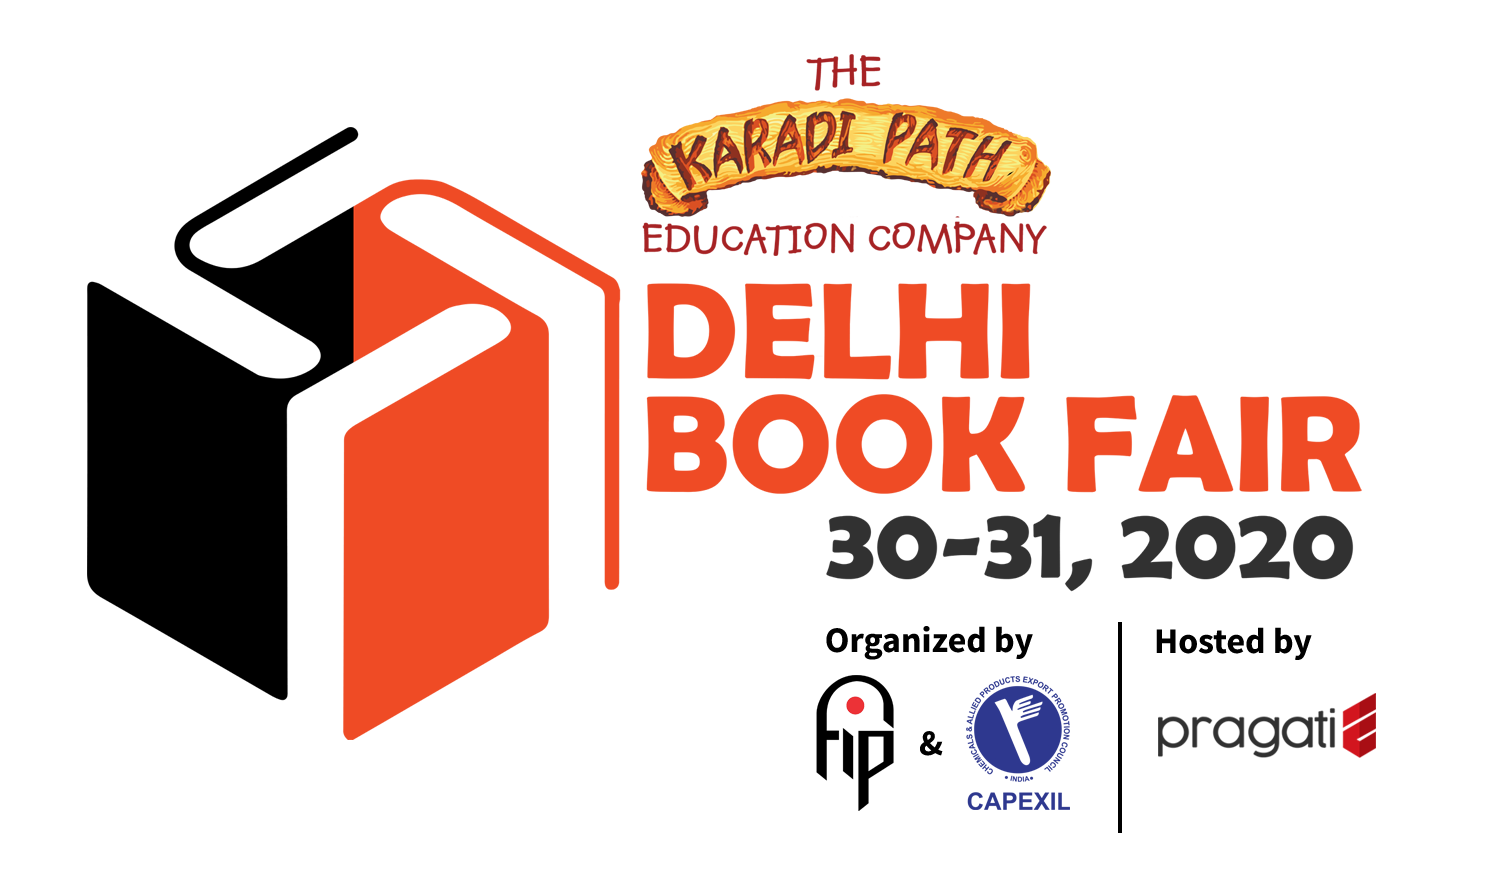 Frontlist | Virtual Delhi Book Fair 2020 becomes world's largest Book Fair